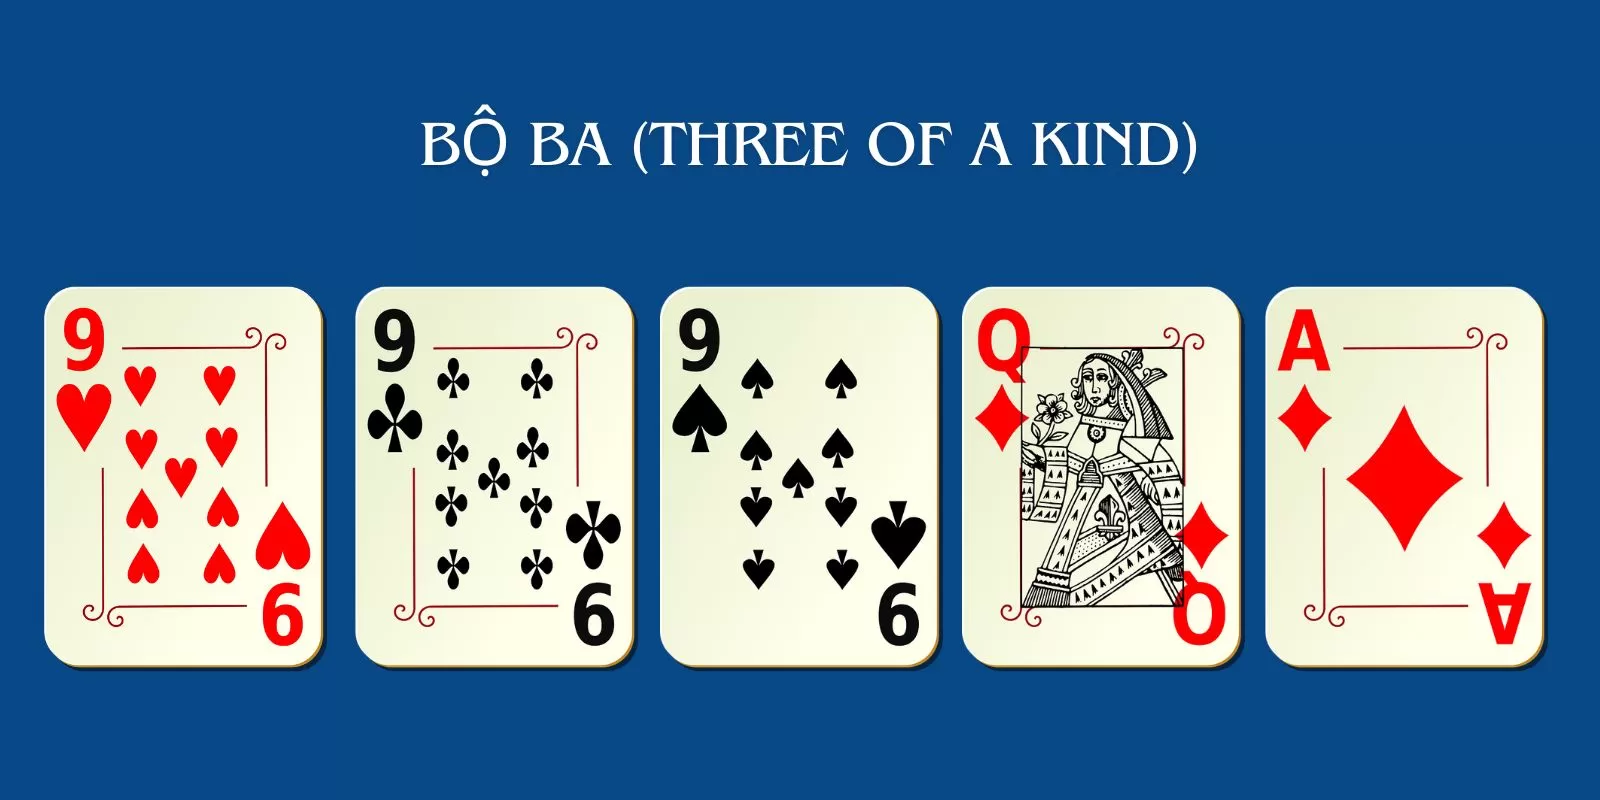 Bộ ba gồm 3 lá bài cùng một giá trị và 2 lá bài bất kỳ